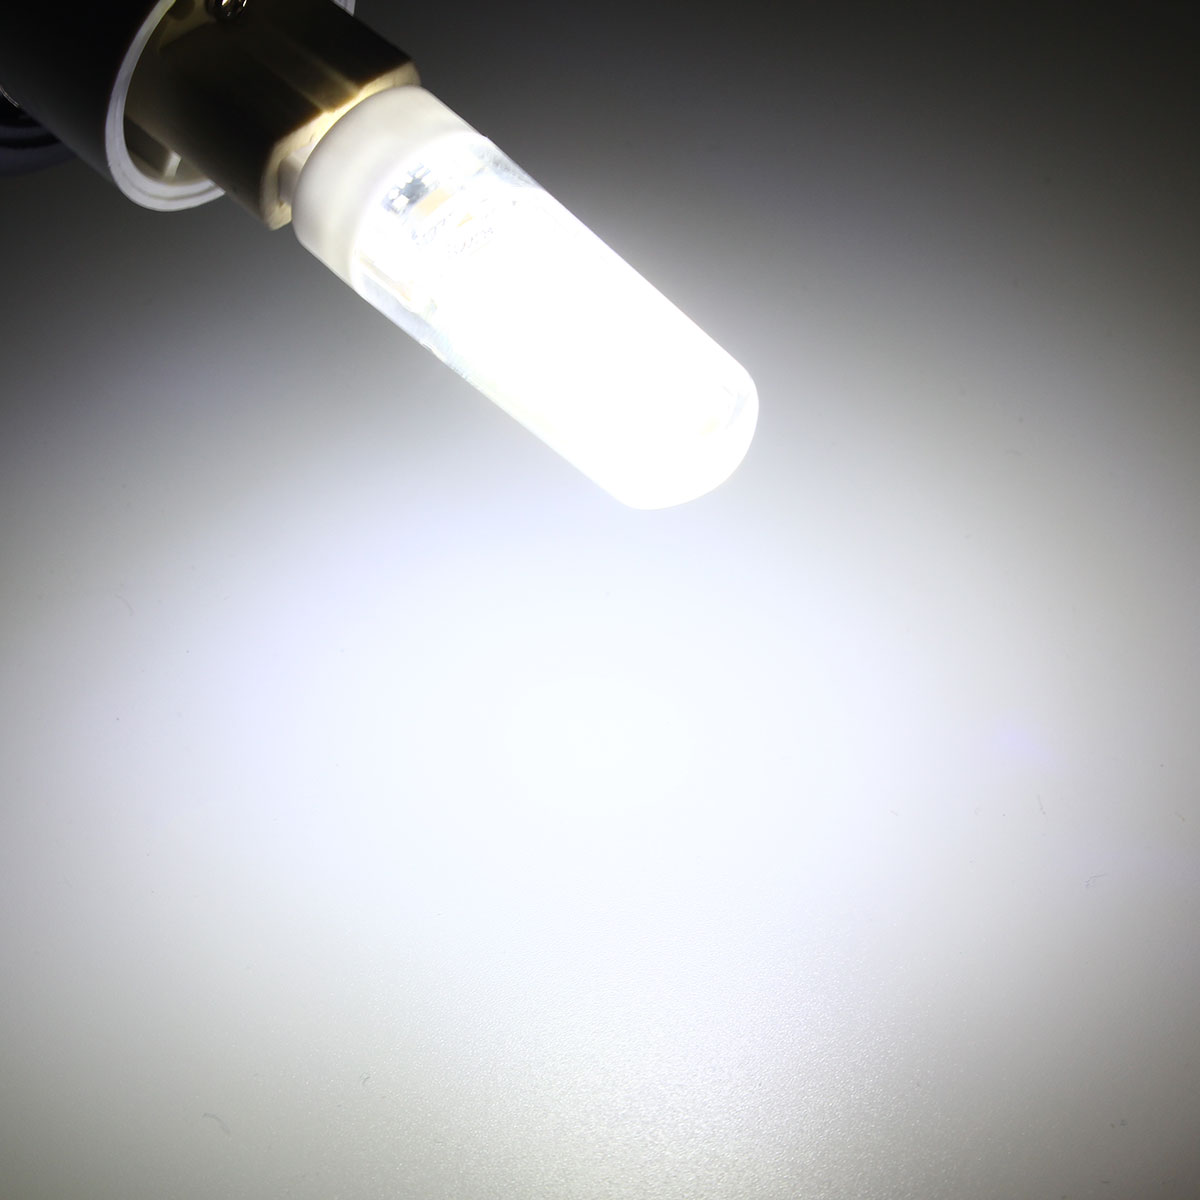 G9-LED-3W-Pure-White-Warm-White-COB-LED-PC-Material-Light-Lamp-Bulb-AC220V-1062195-2